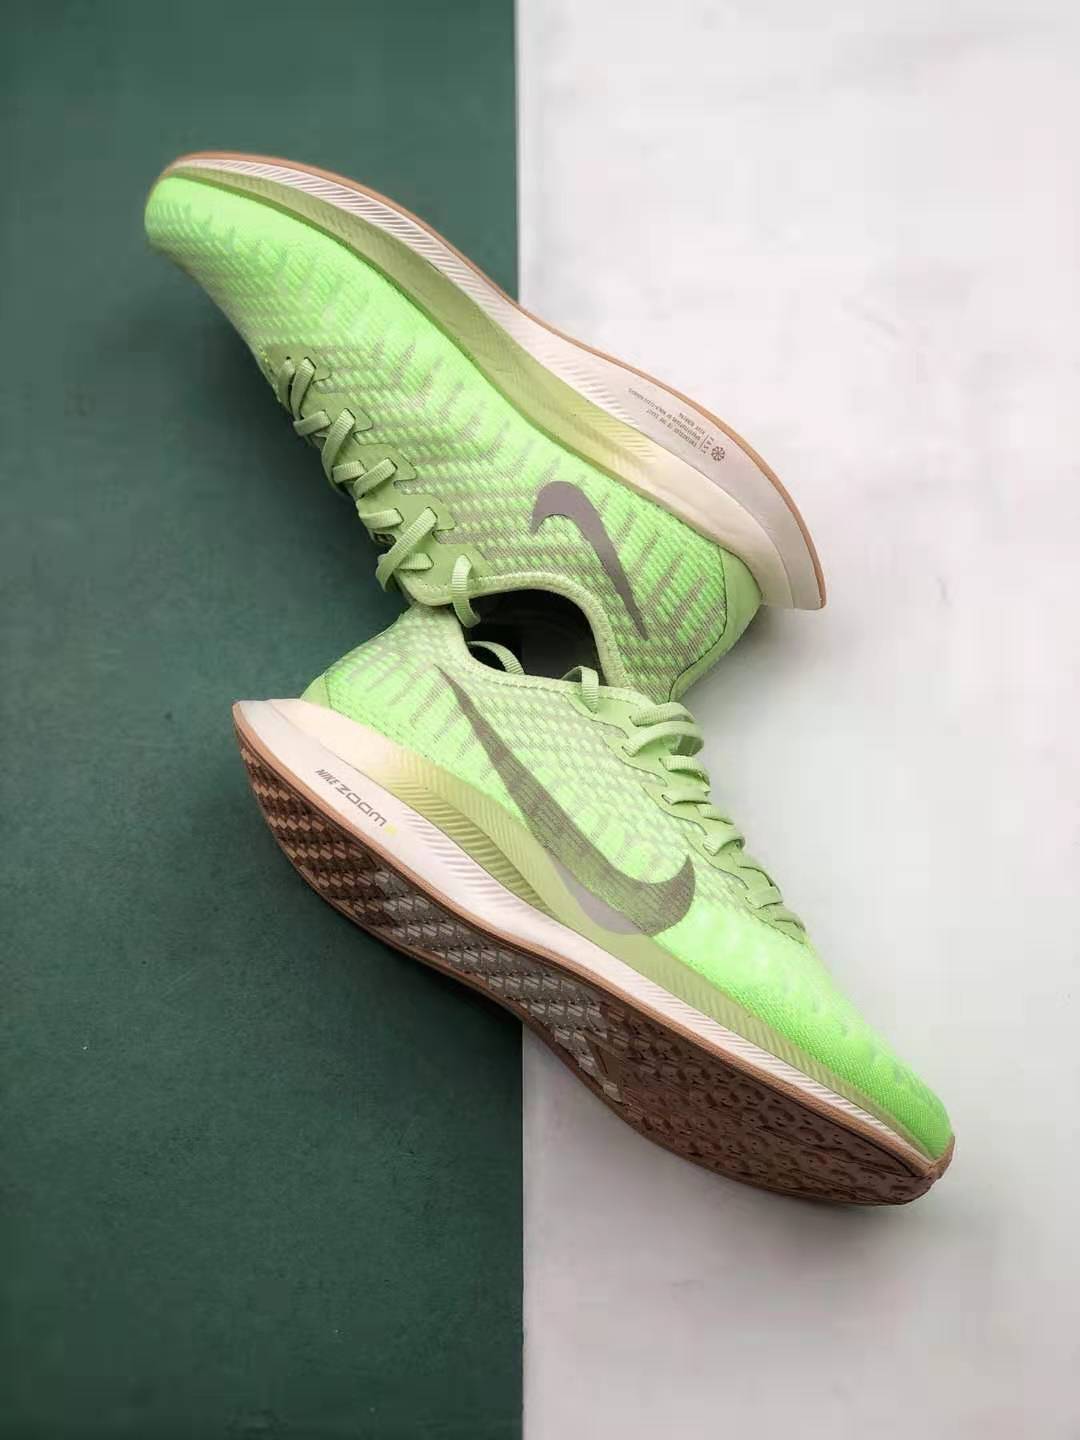 Nike Zoom Pegasus Turbo 2 Lab Green Women's Running Shoe - AT8242 300